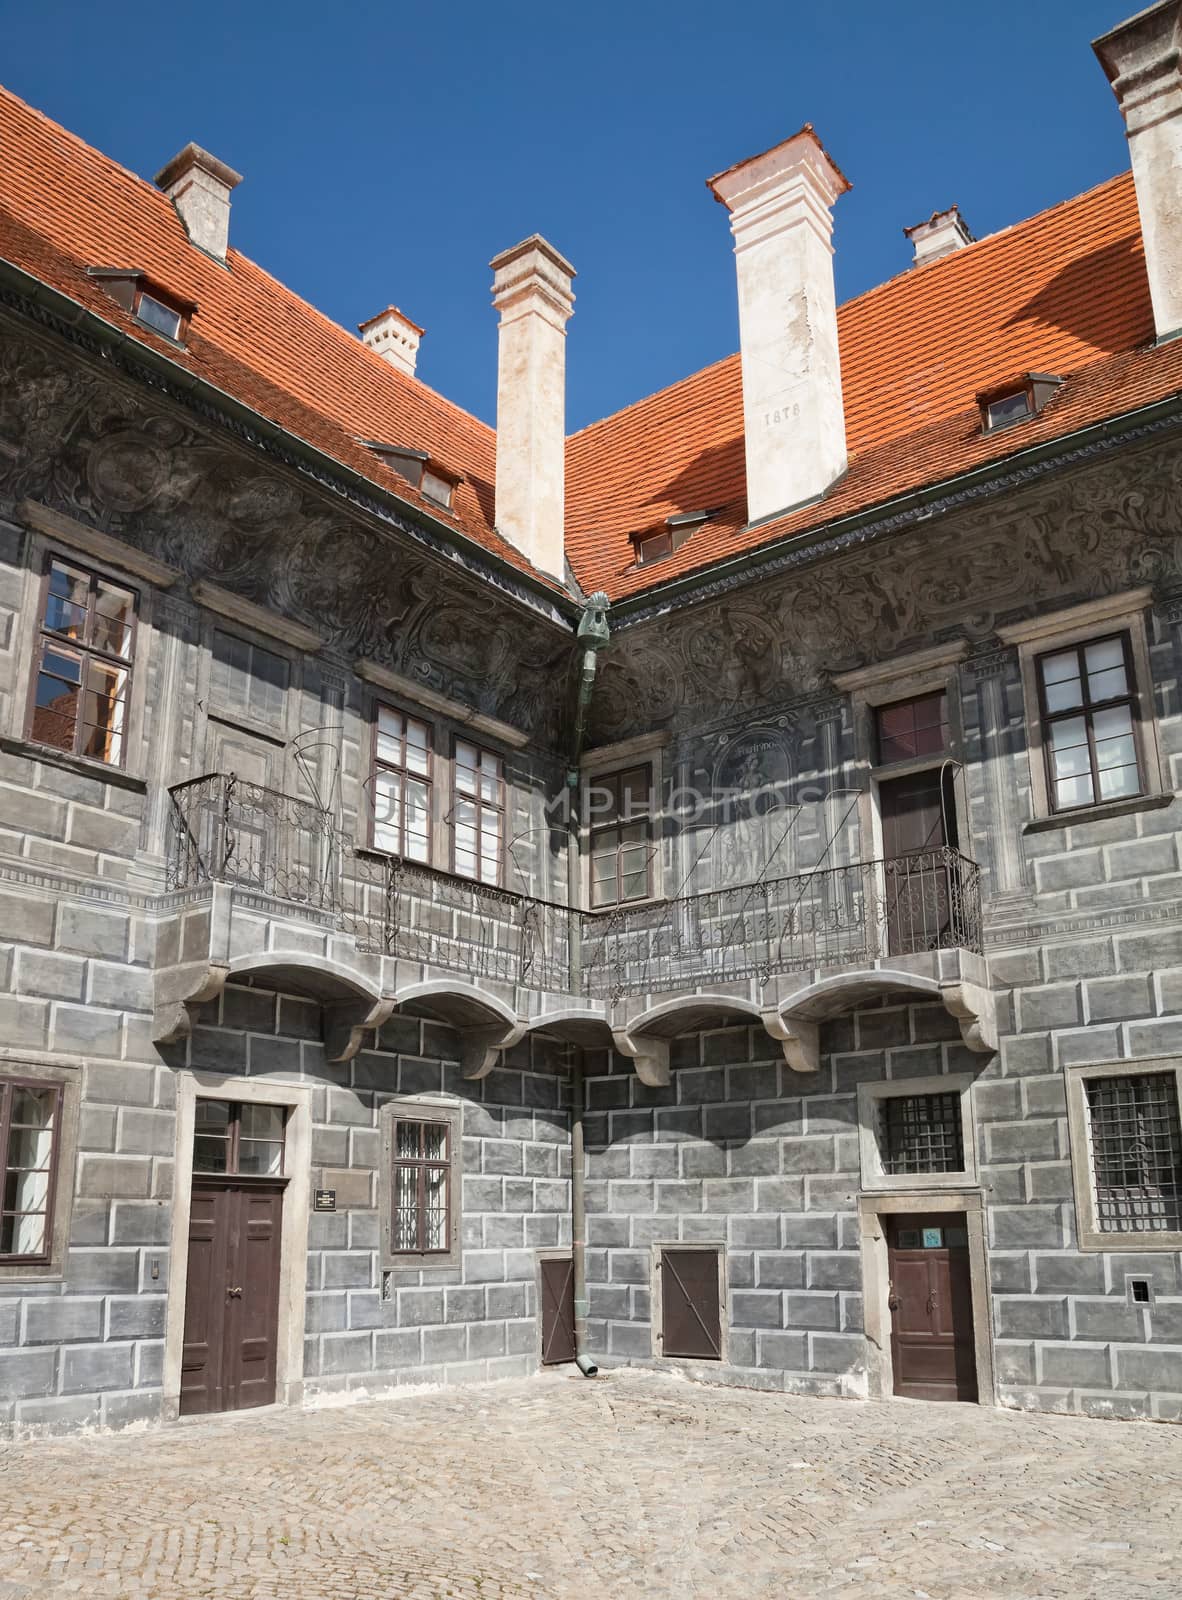 The Castle facade of Cesky Krumlov